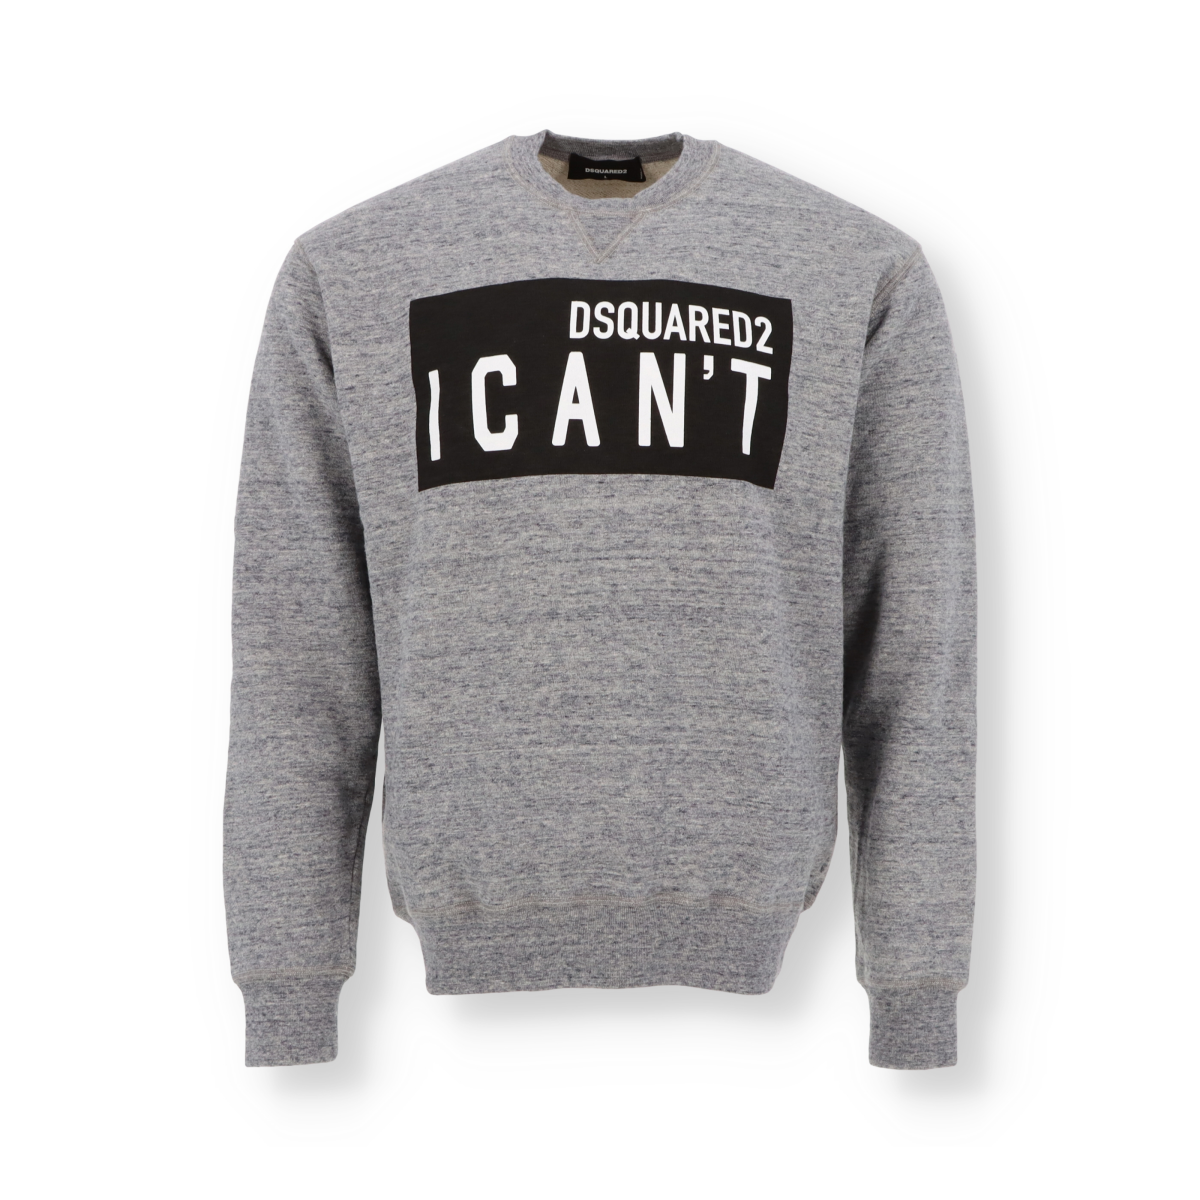 Sweatshirt Dsquared2 I can't